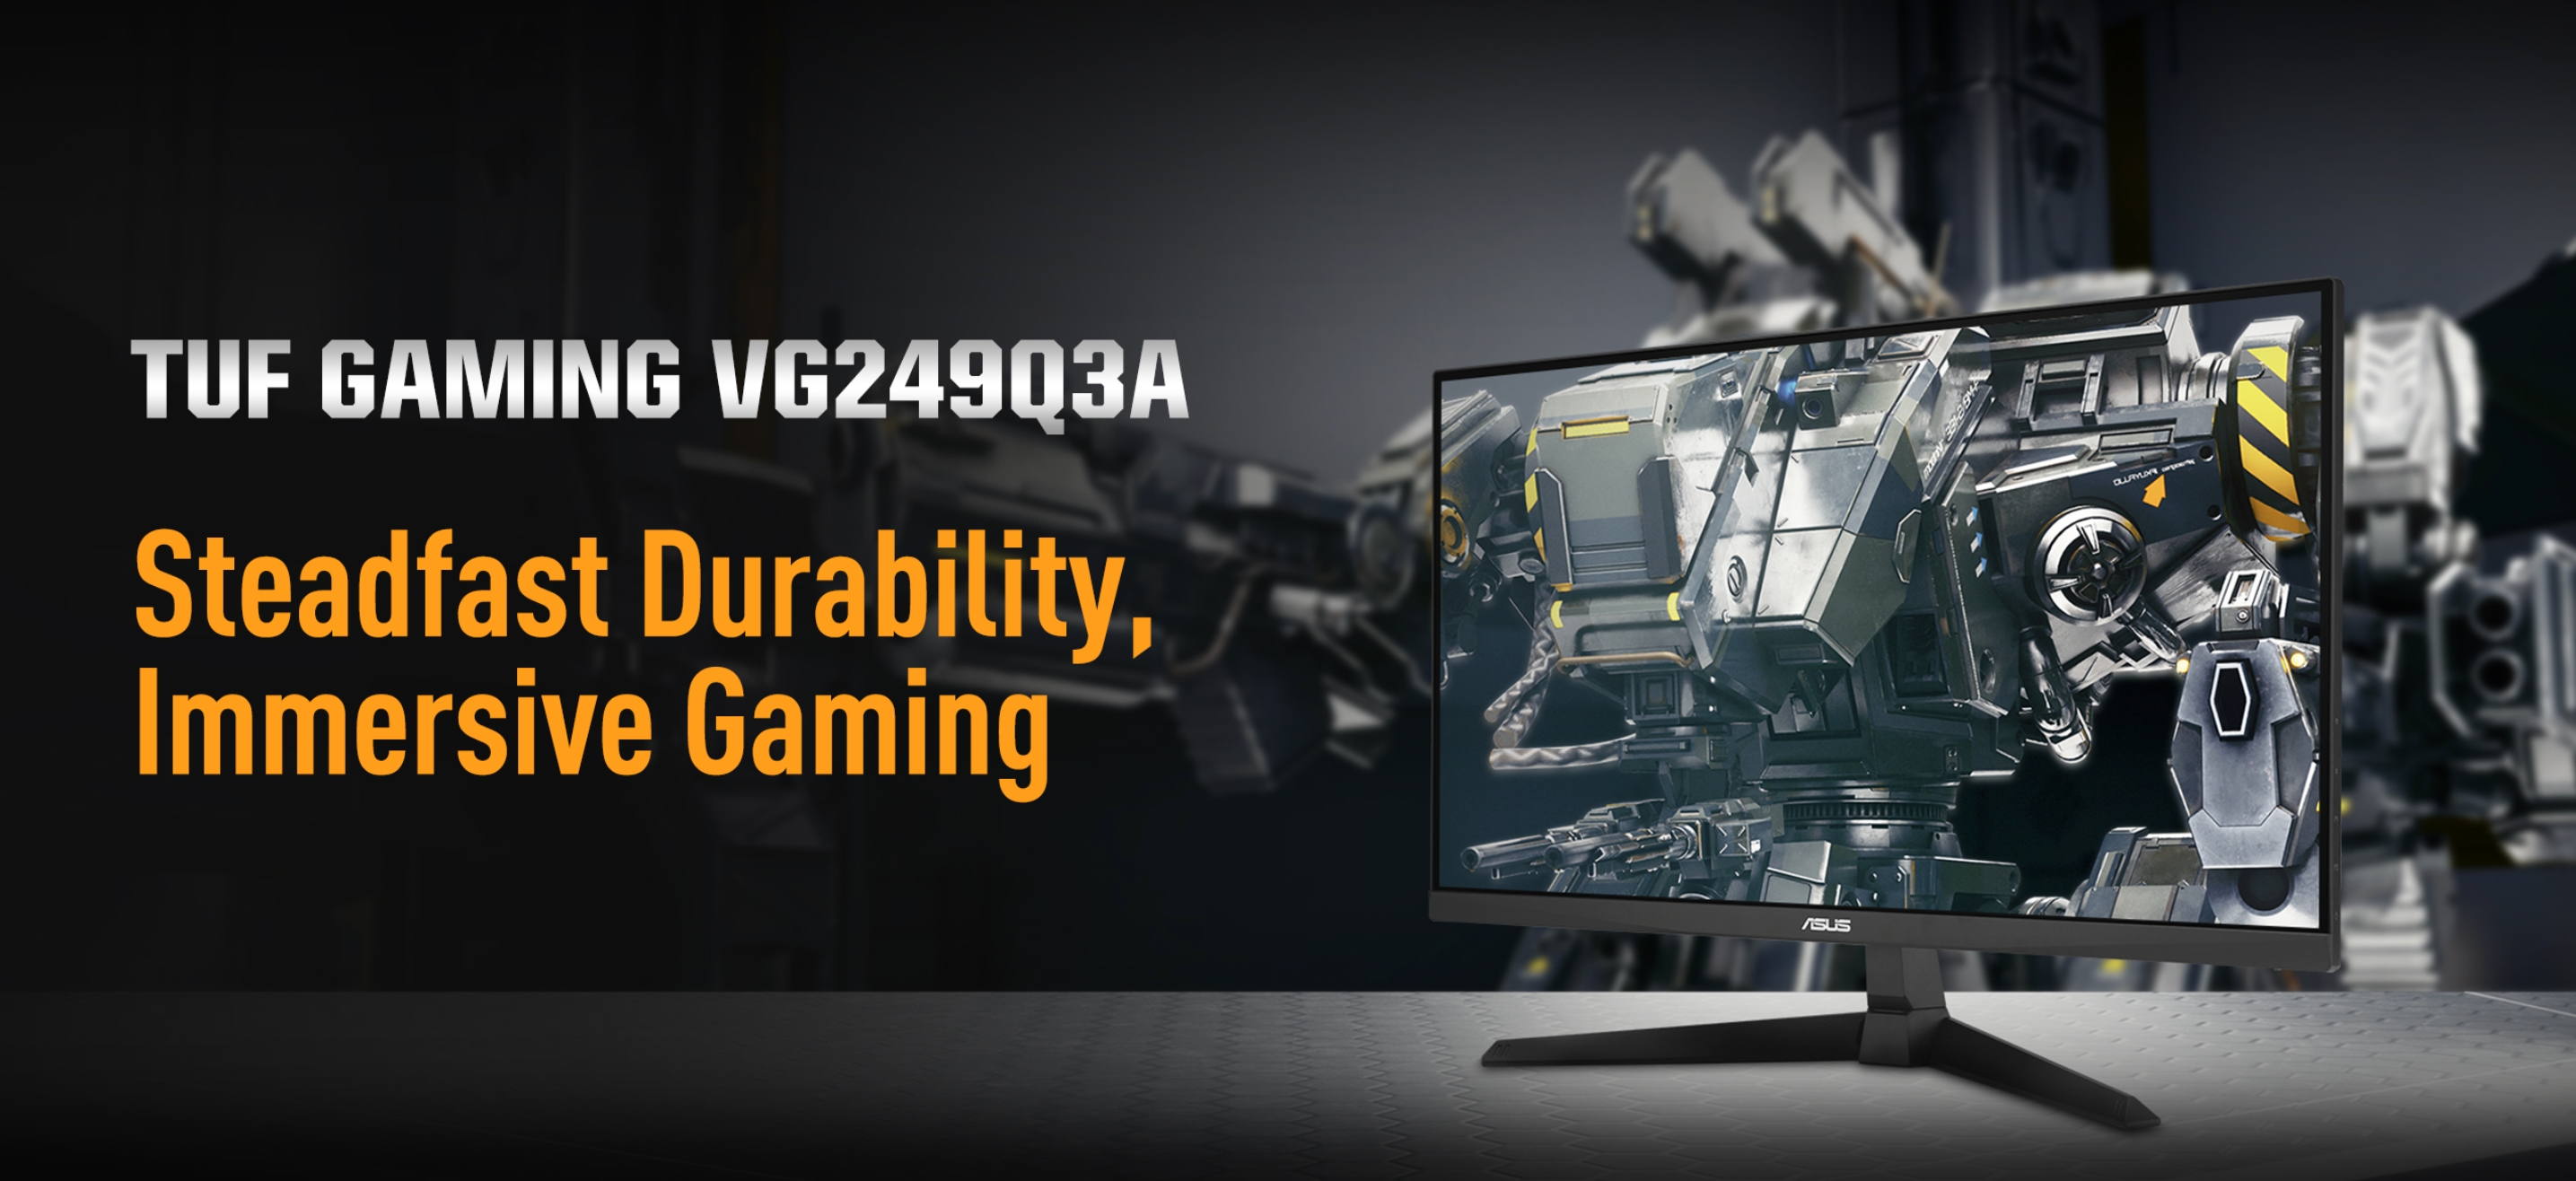 ASUS TUF Gaming VG249Q3A: Gaming monitor with 23.8" screen at 180Hz